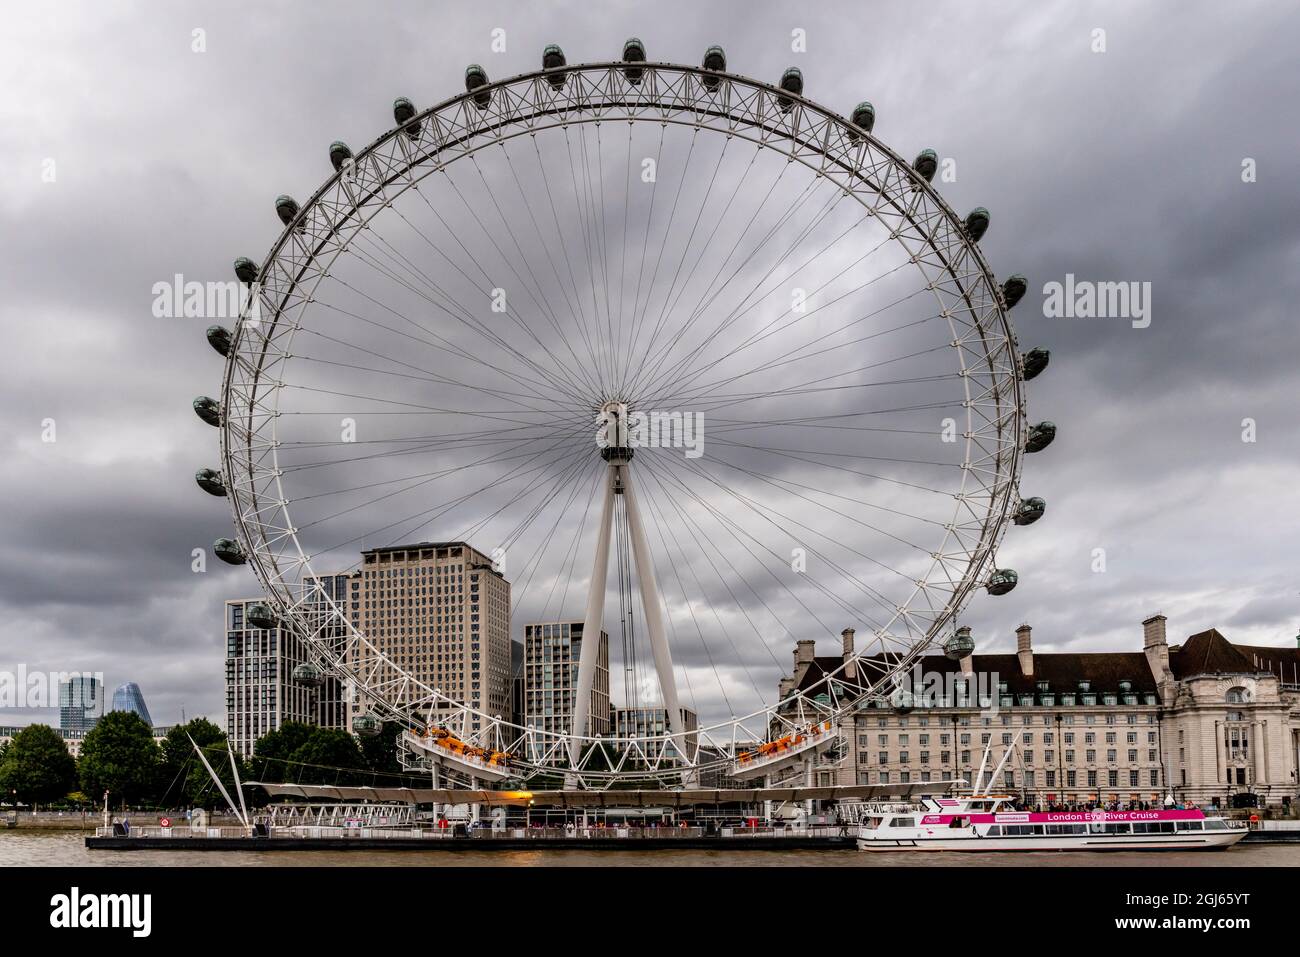 London Eye e London Eye River Cruise Boat in Un giorno nuvoloso, Londra, Regno Unito. Foto Stock